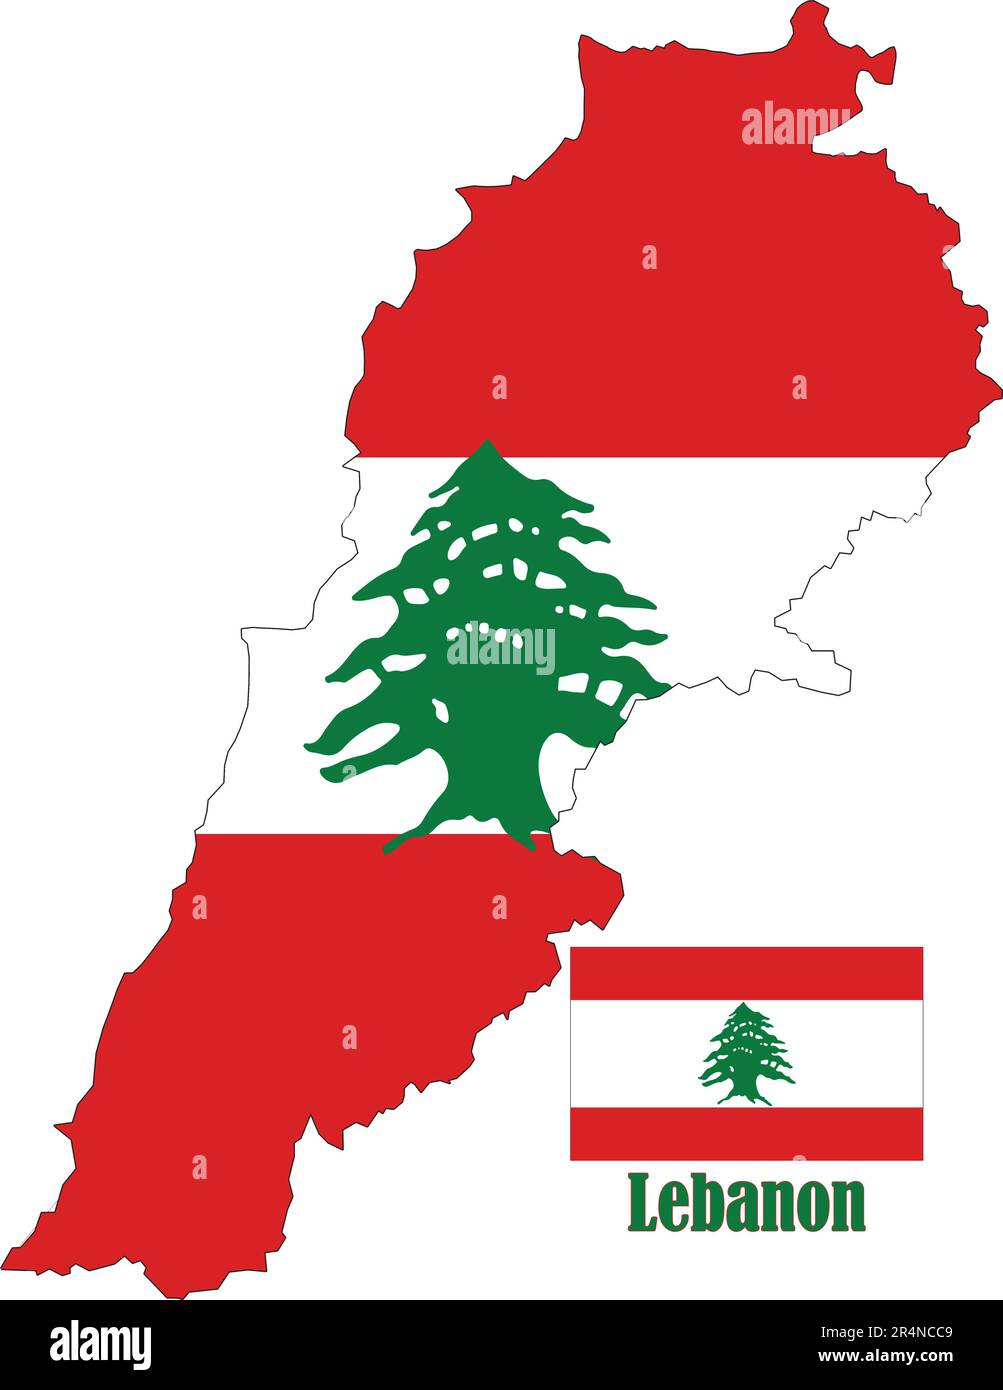 Lebanon Map And Flag 2R4NCC9 